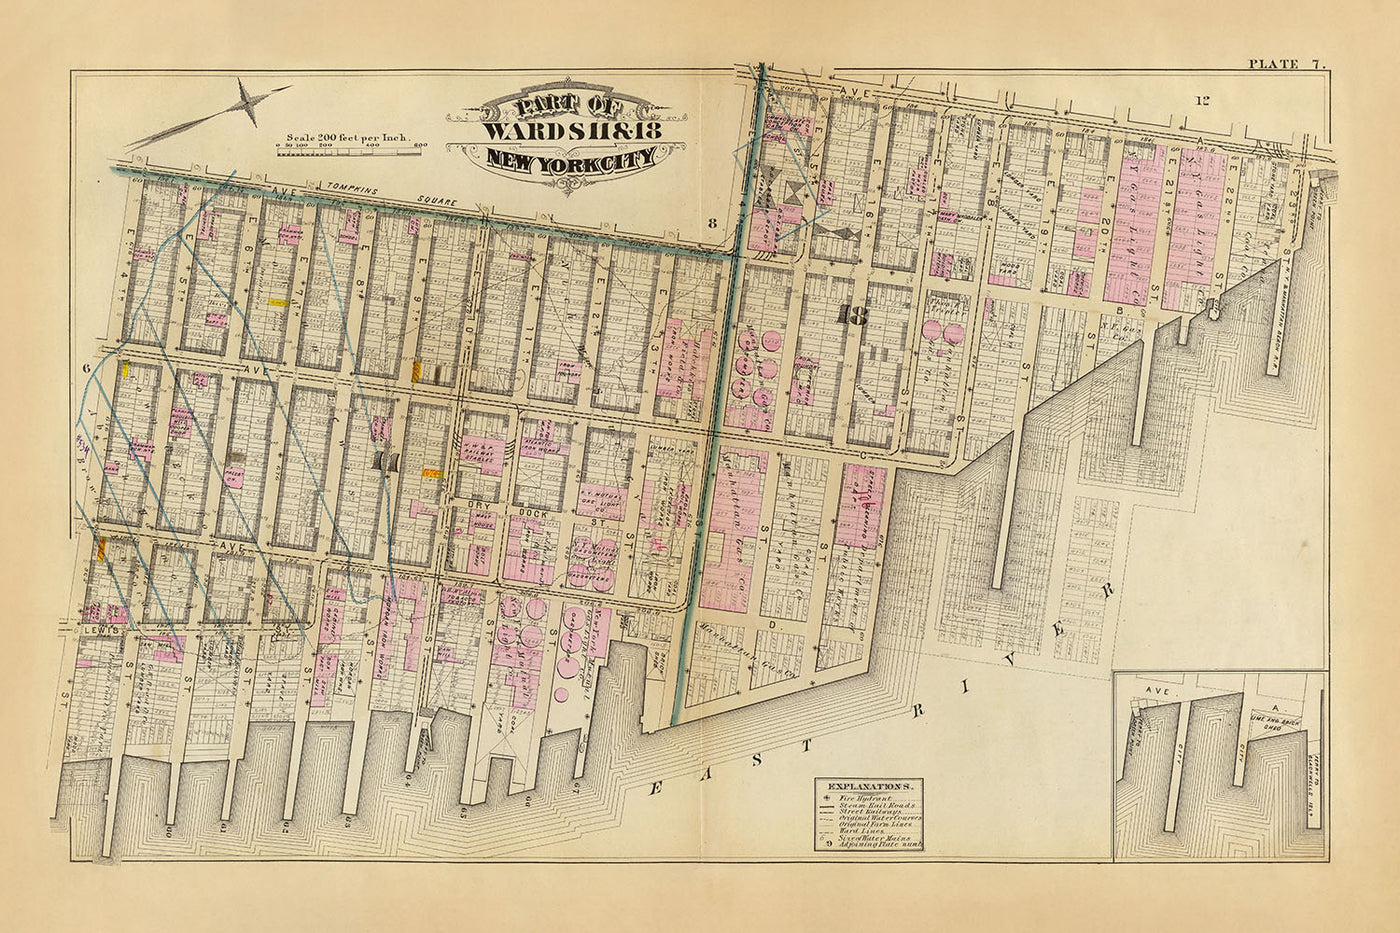 Alte Karte der Lower East Side, New York City, 1879: Bromleys detaillierte Bezirke 11 und 18